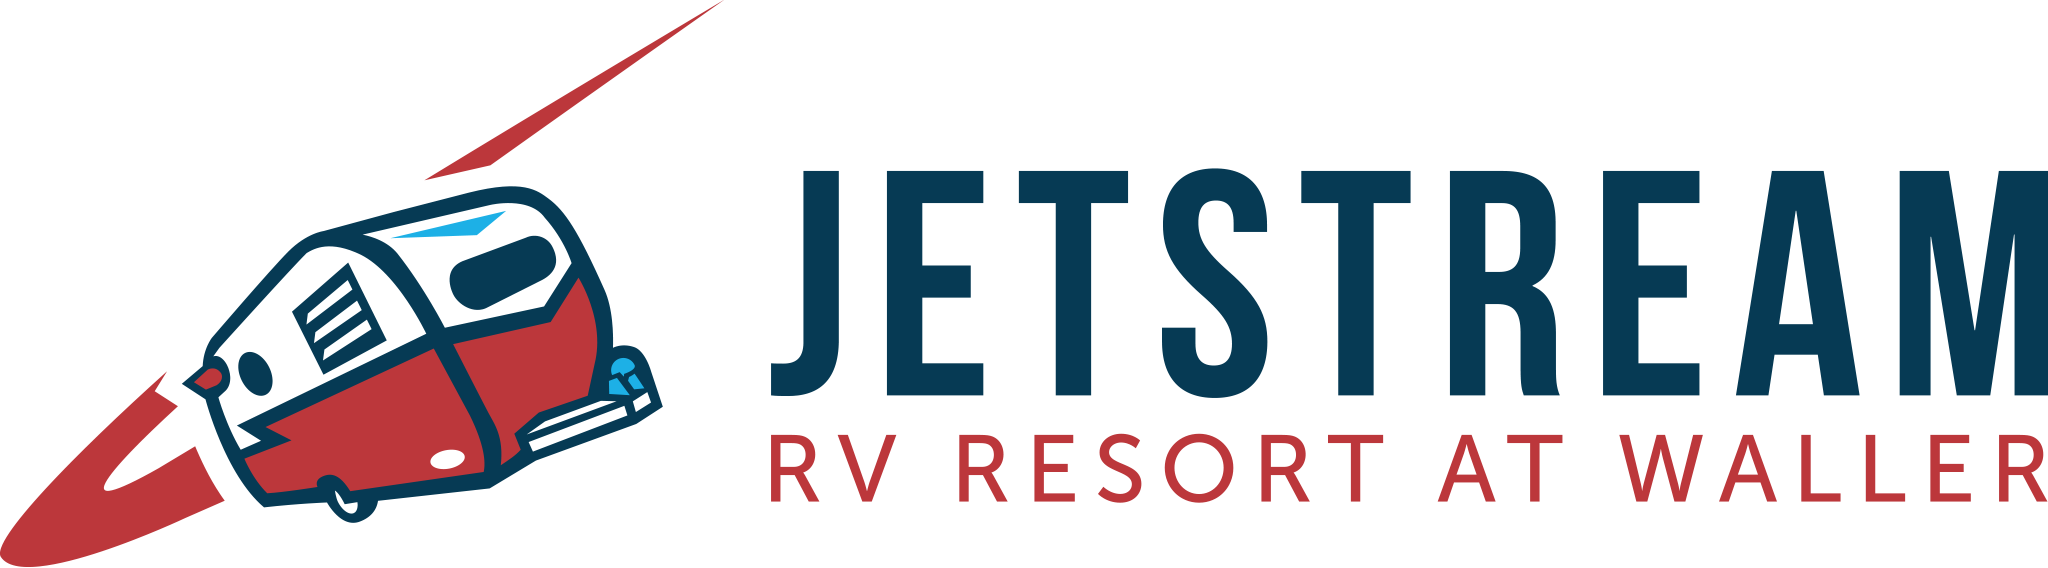 jetstream rv resort at waller logo